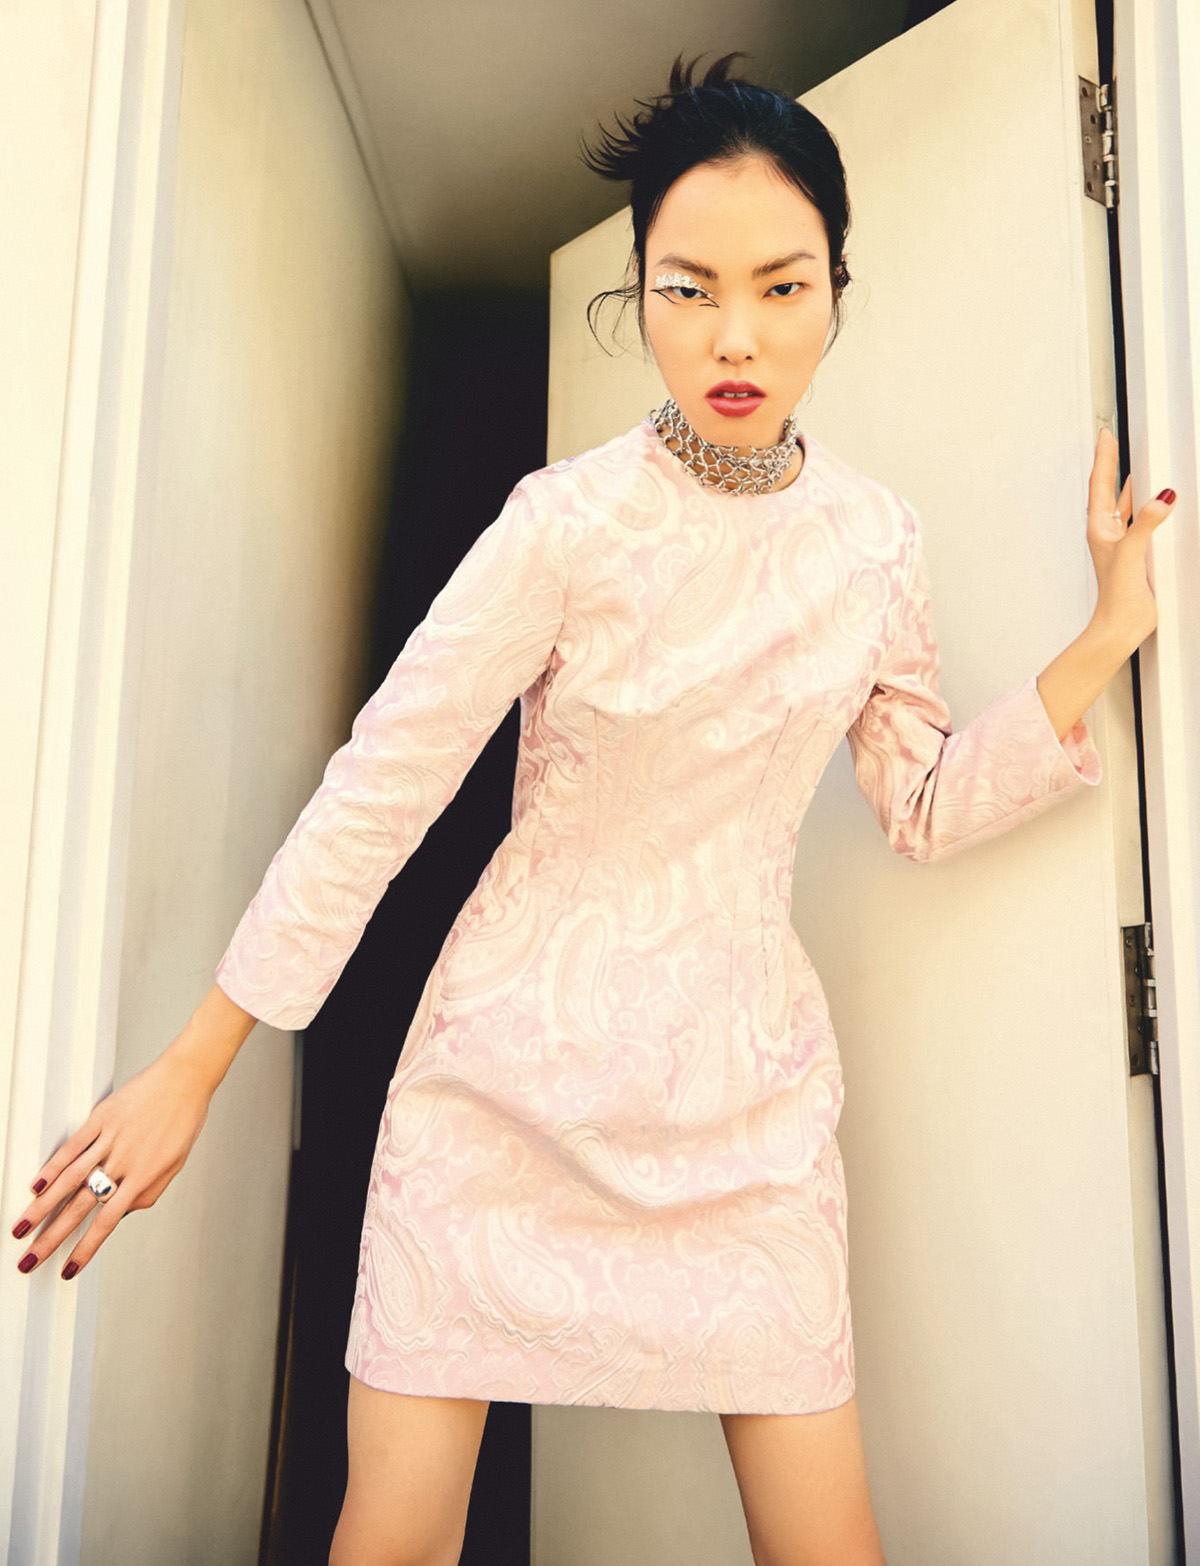 Alberta Aini by Wei Te Tan for Harper’s Bazaar Singapore December 2021